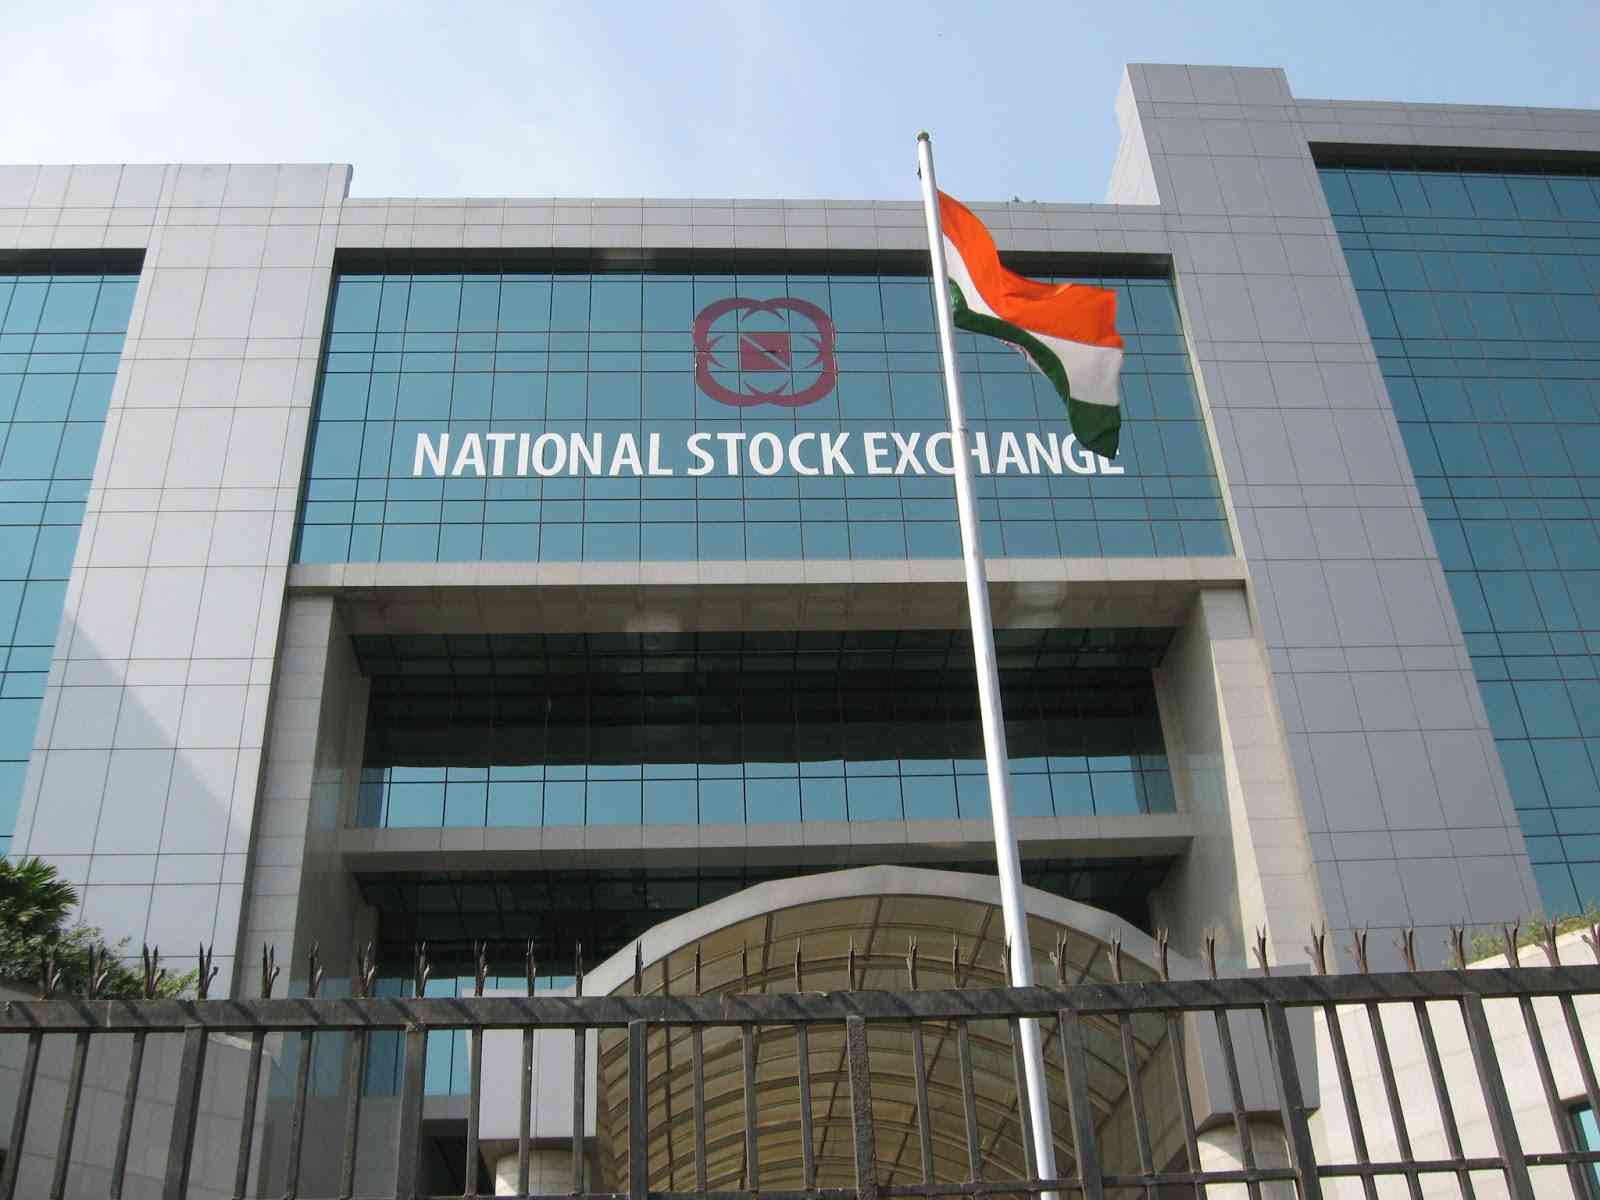 National Stock exchange